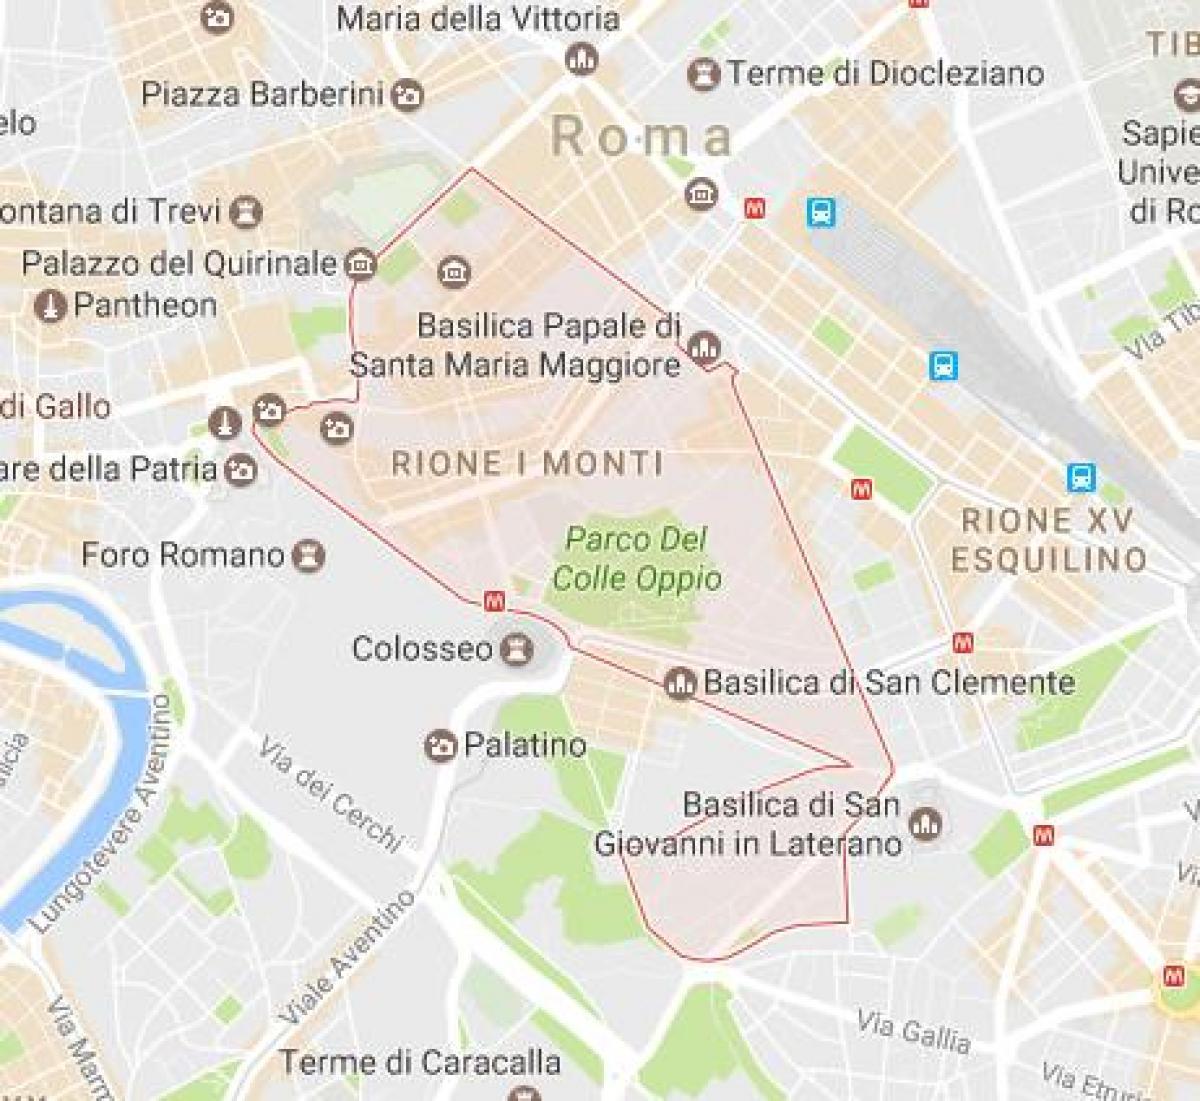 خريطة مونتي في روما